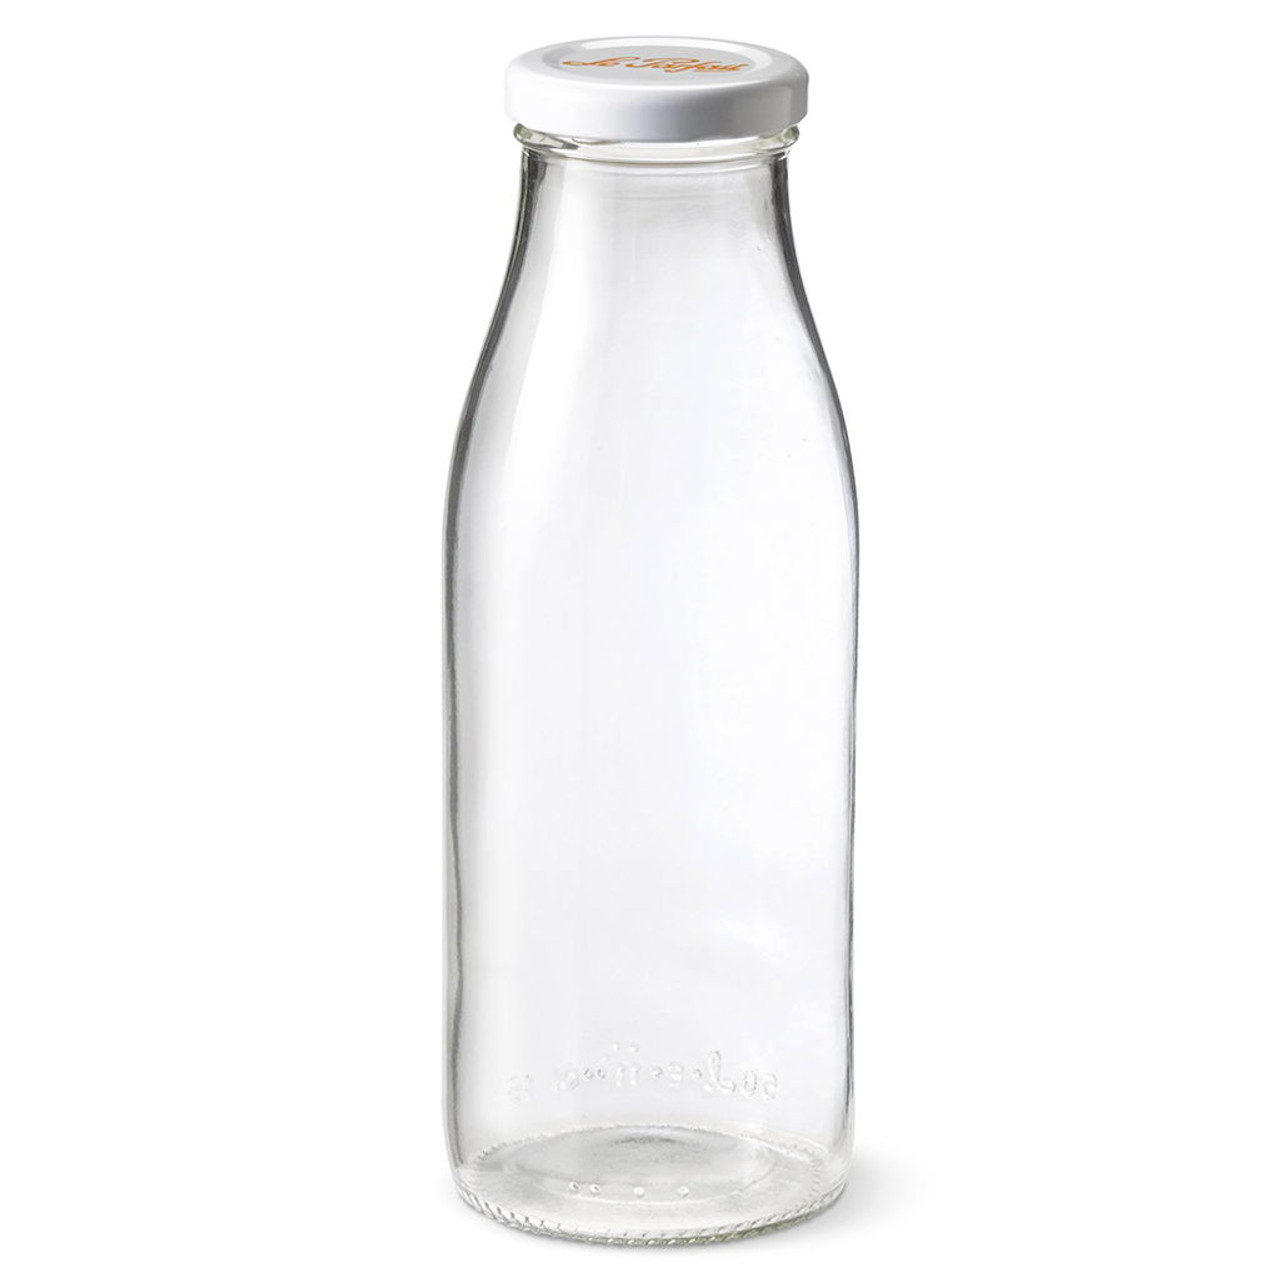 Le Parfait Bottles 1L (32oz) Milk Cap / 6